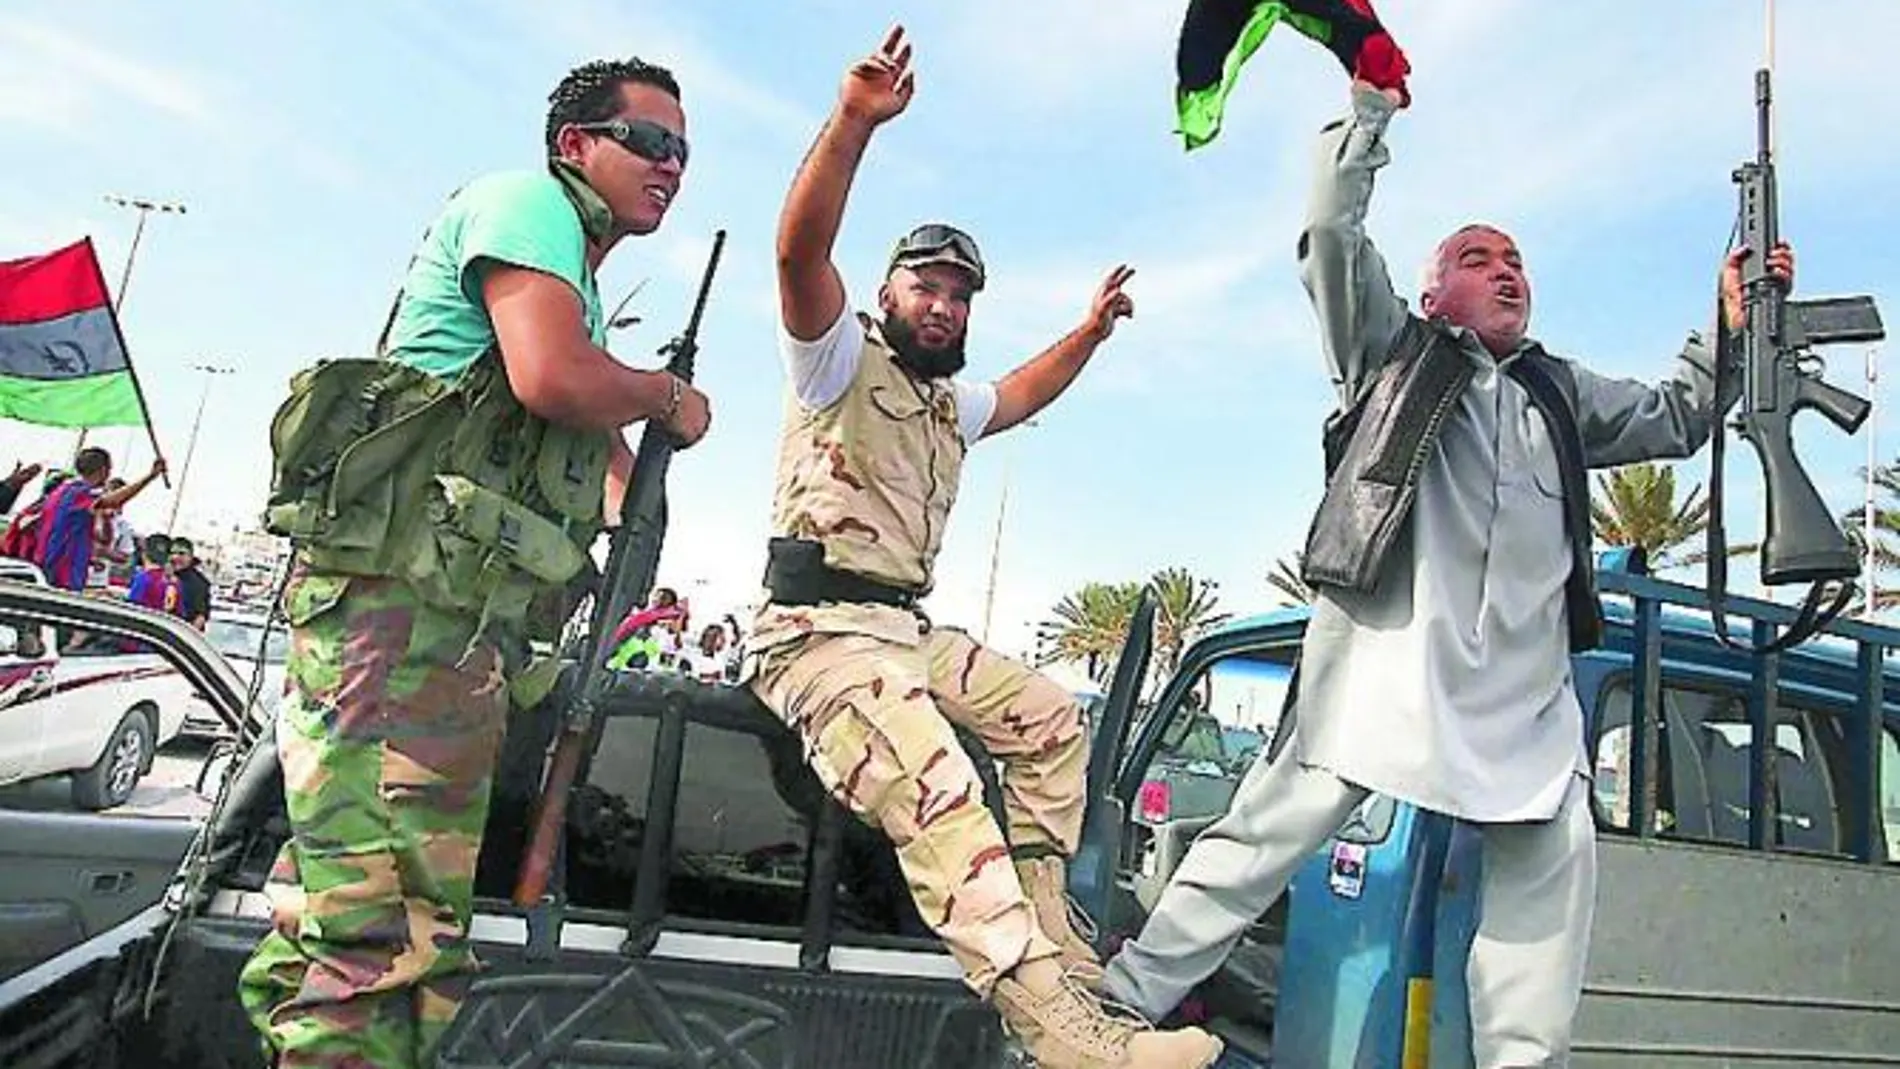 Rebeldes libios celebraron ayer en Trípoli la conquista de Sirte y la caída del dictador, acontecimientos que marcan el final de la guerra